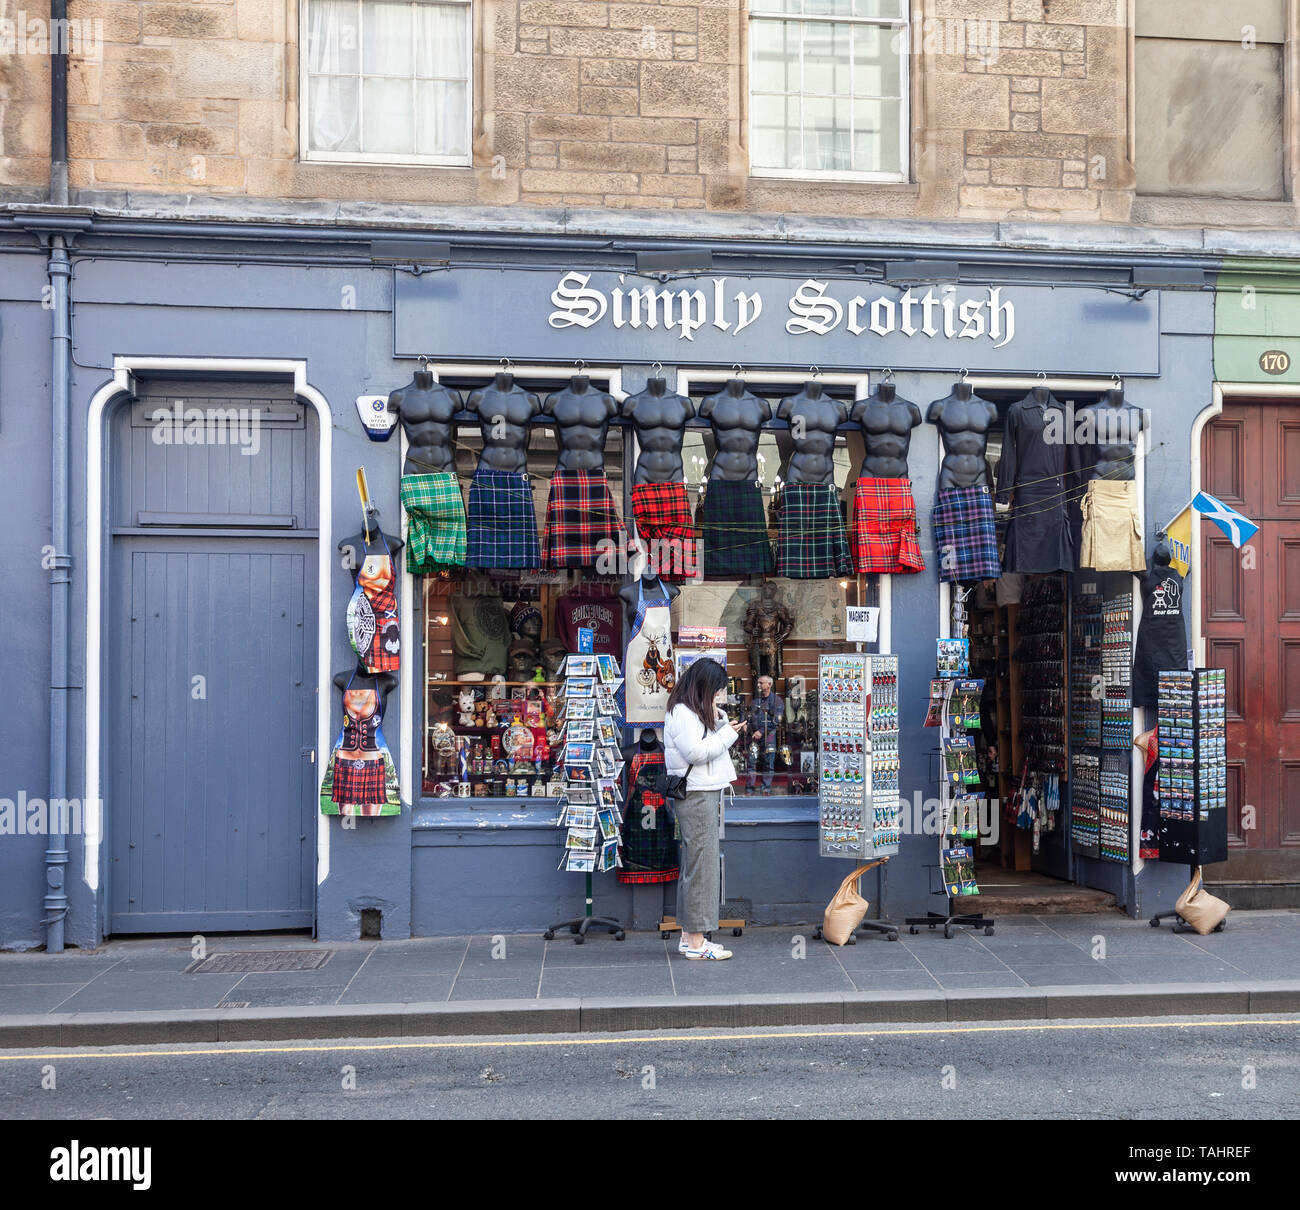 Une jeune femme contrôler son téléphone à l'extérieur tout simplement des Écossais, une boutique vendant des souvenirs, des Écossais dans le Royal Mile / High Street, dans la vieille ville de Edinbu Banque D'Images